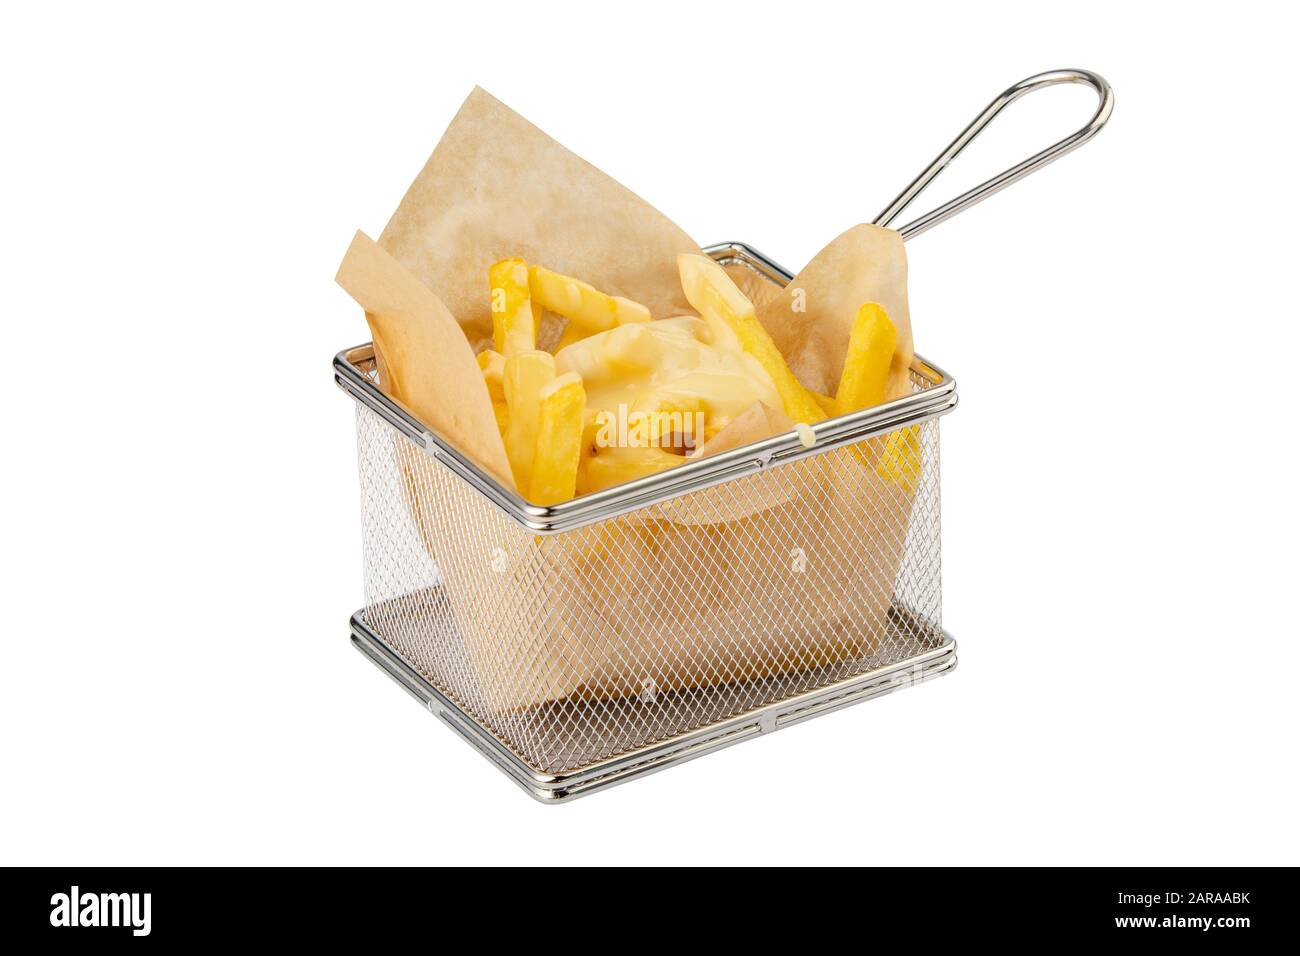 Patatas fritas servidas en una cesta de fritura de malla metálica aislada sobre fondo blanco Foto de stock